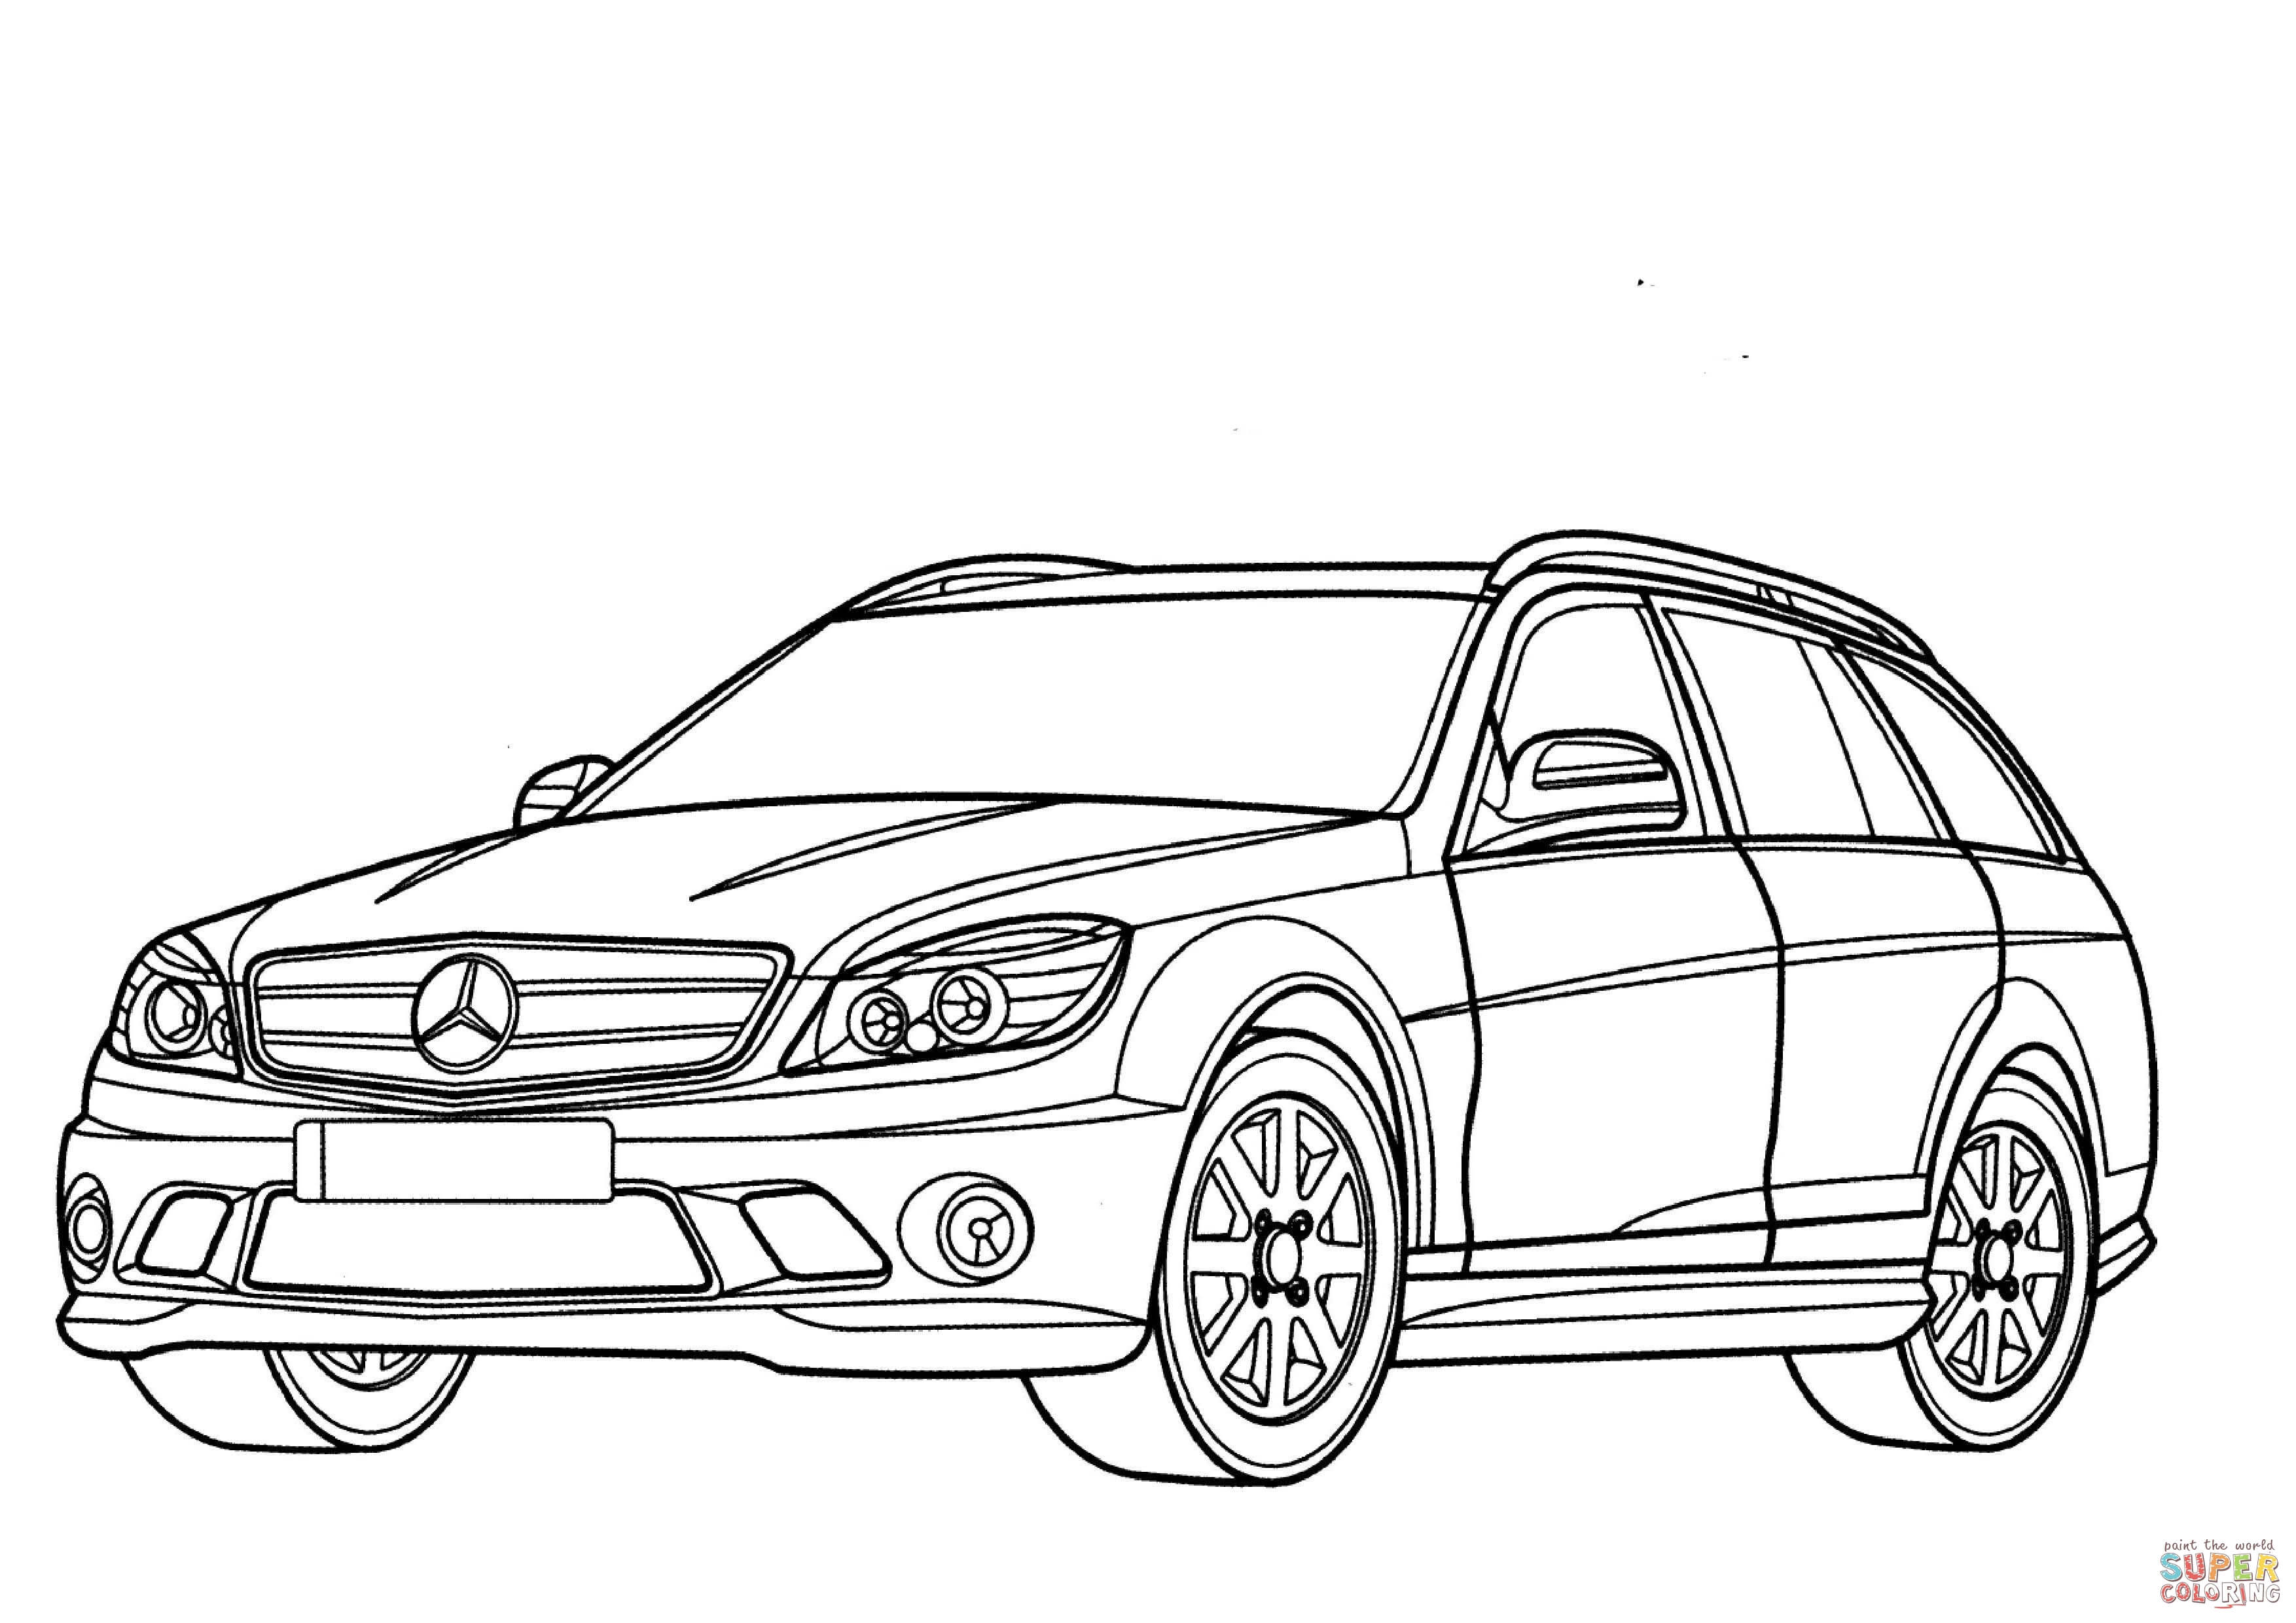 Mercedes-Benz C-Class wagon coloring ...supercoloring.com